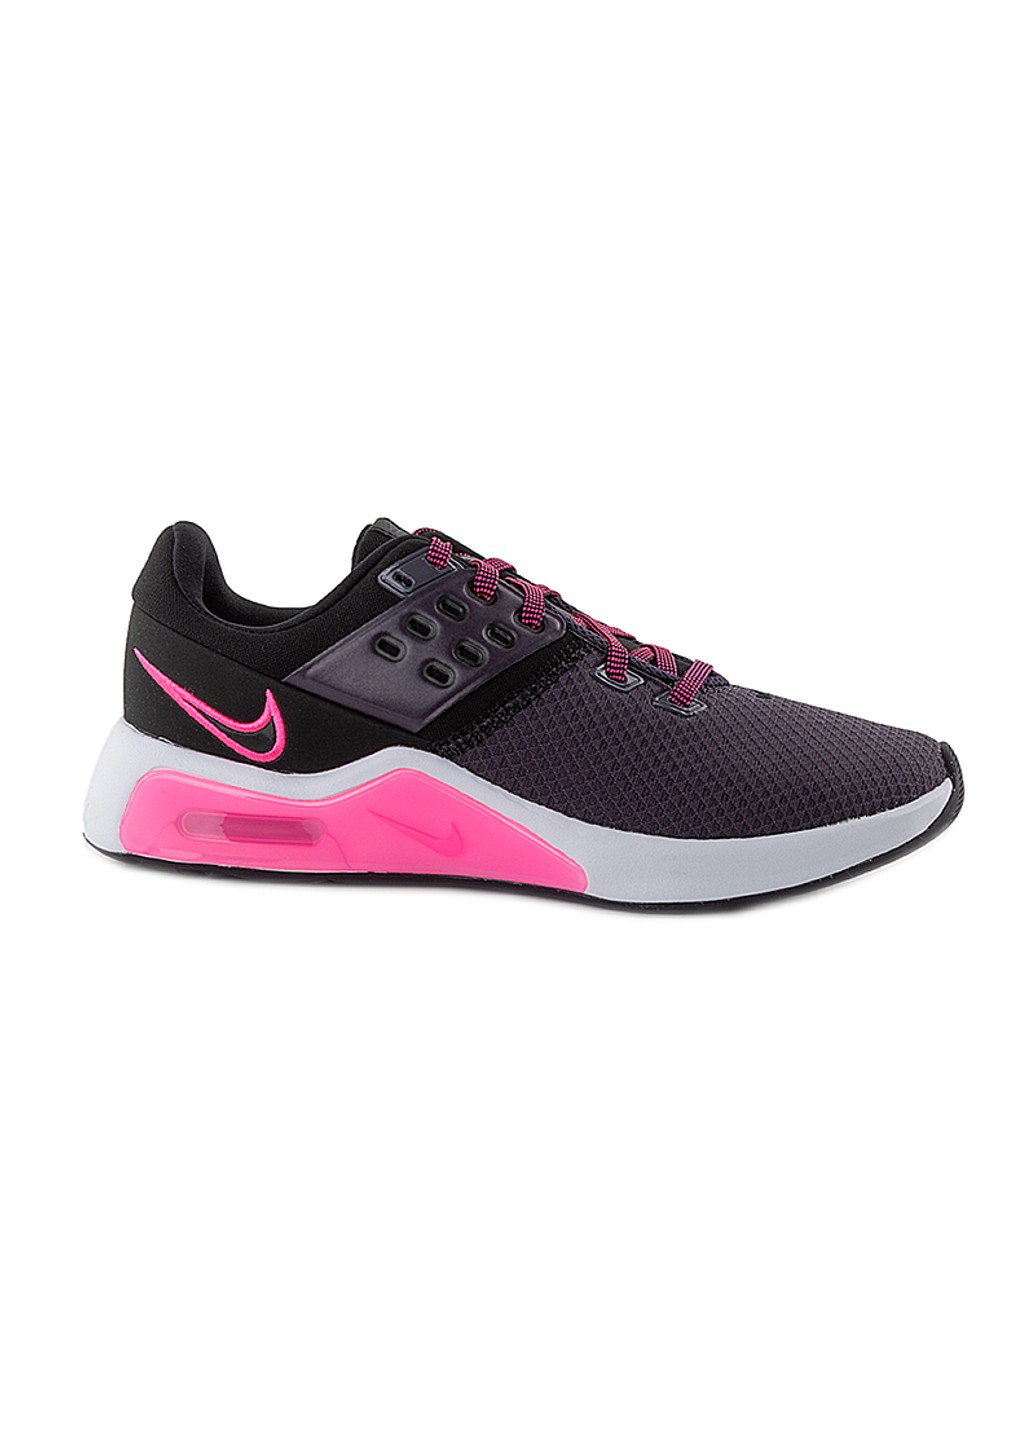 Черные демисезонные кроссовки wmns air max bella tr 4 Nike